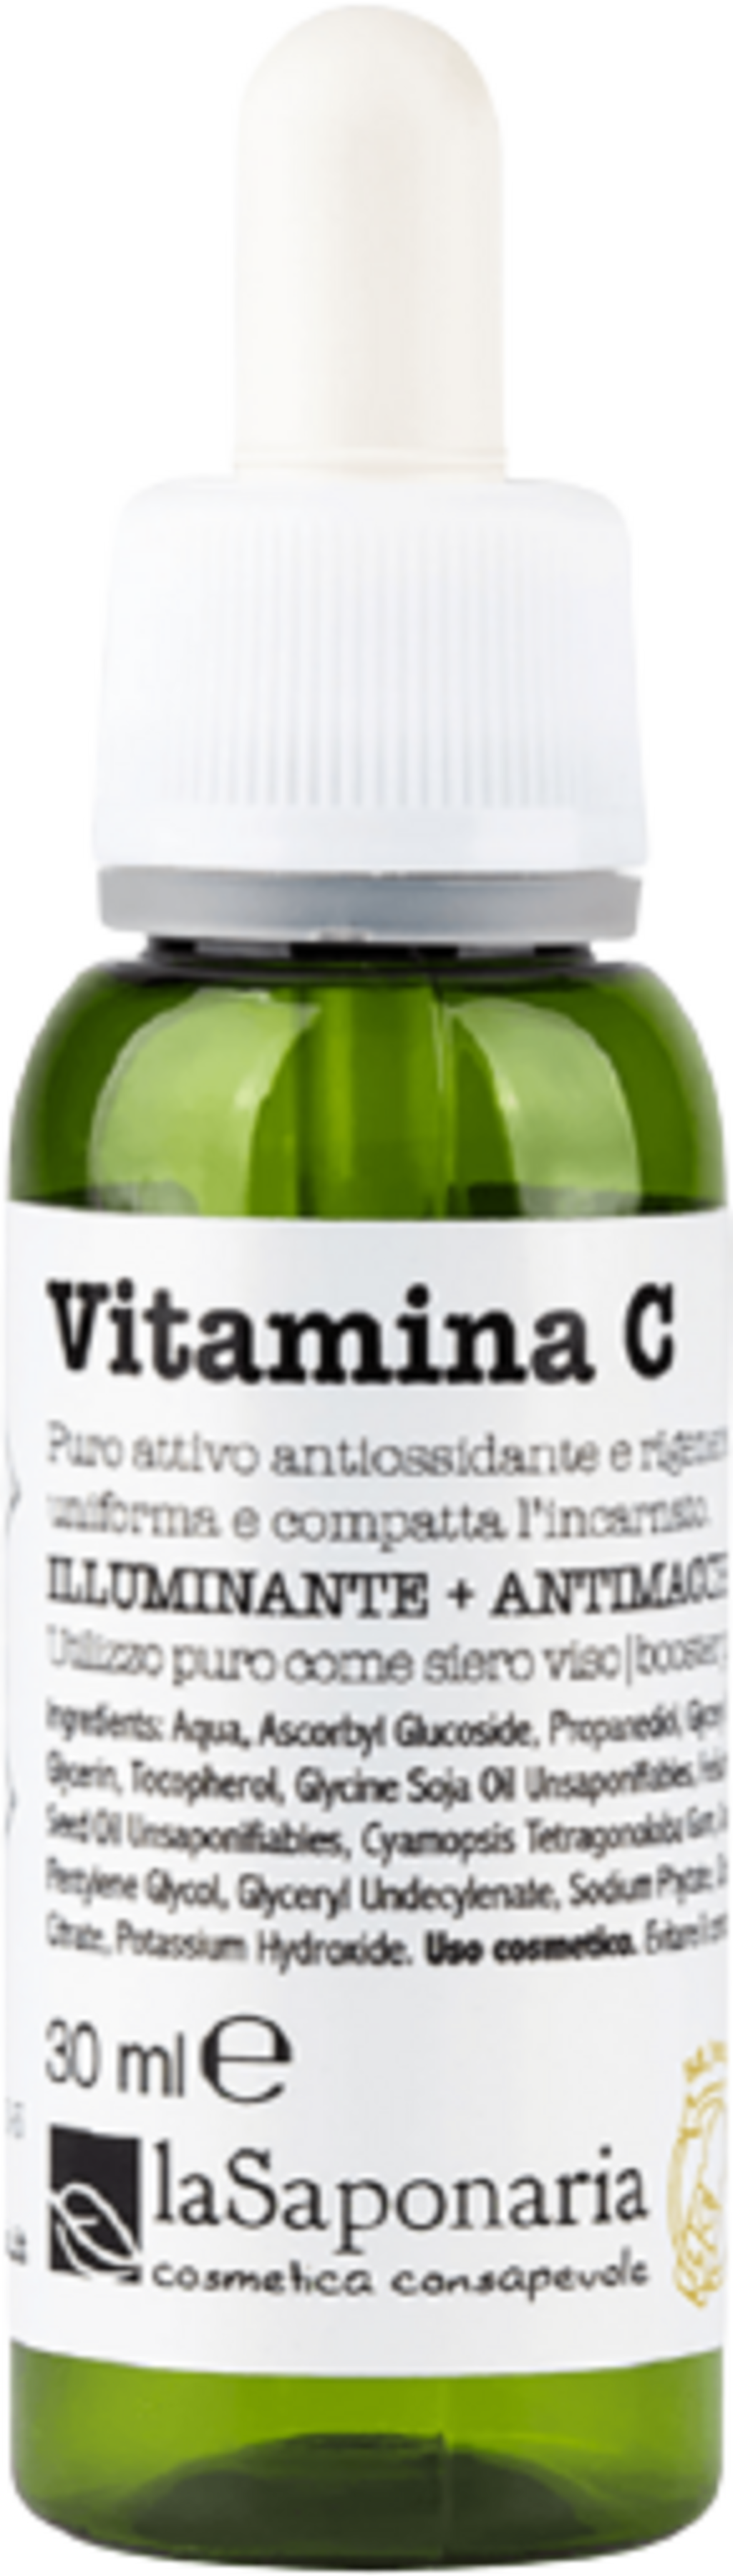 La Saponaria Attivi Puri Vitamin C - 30 ml